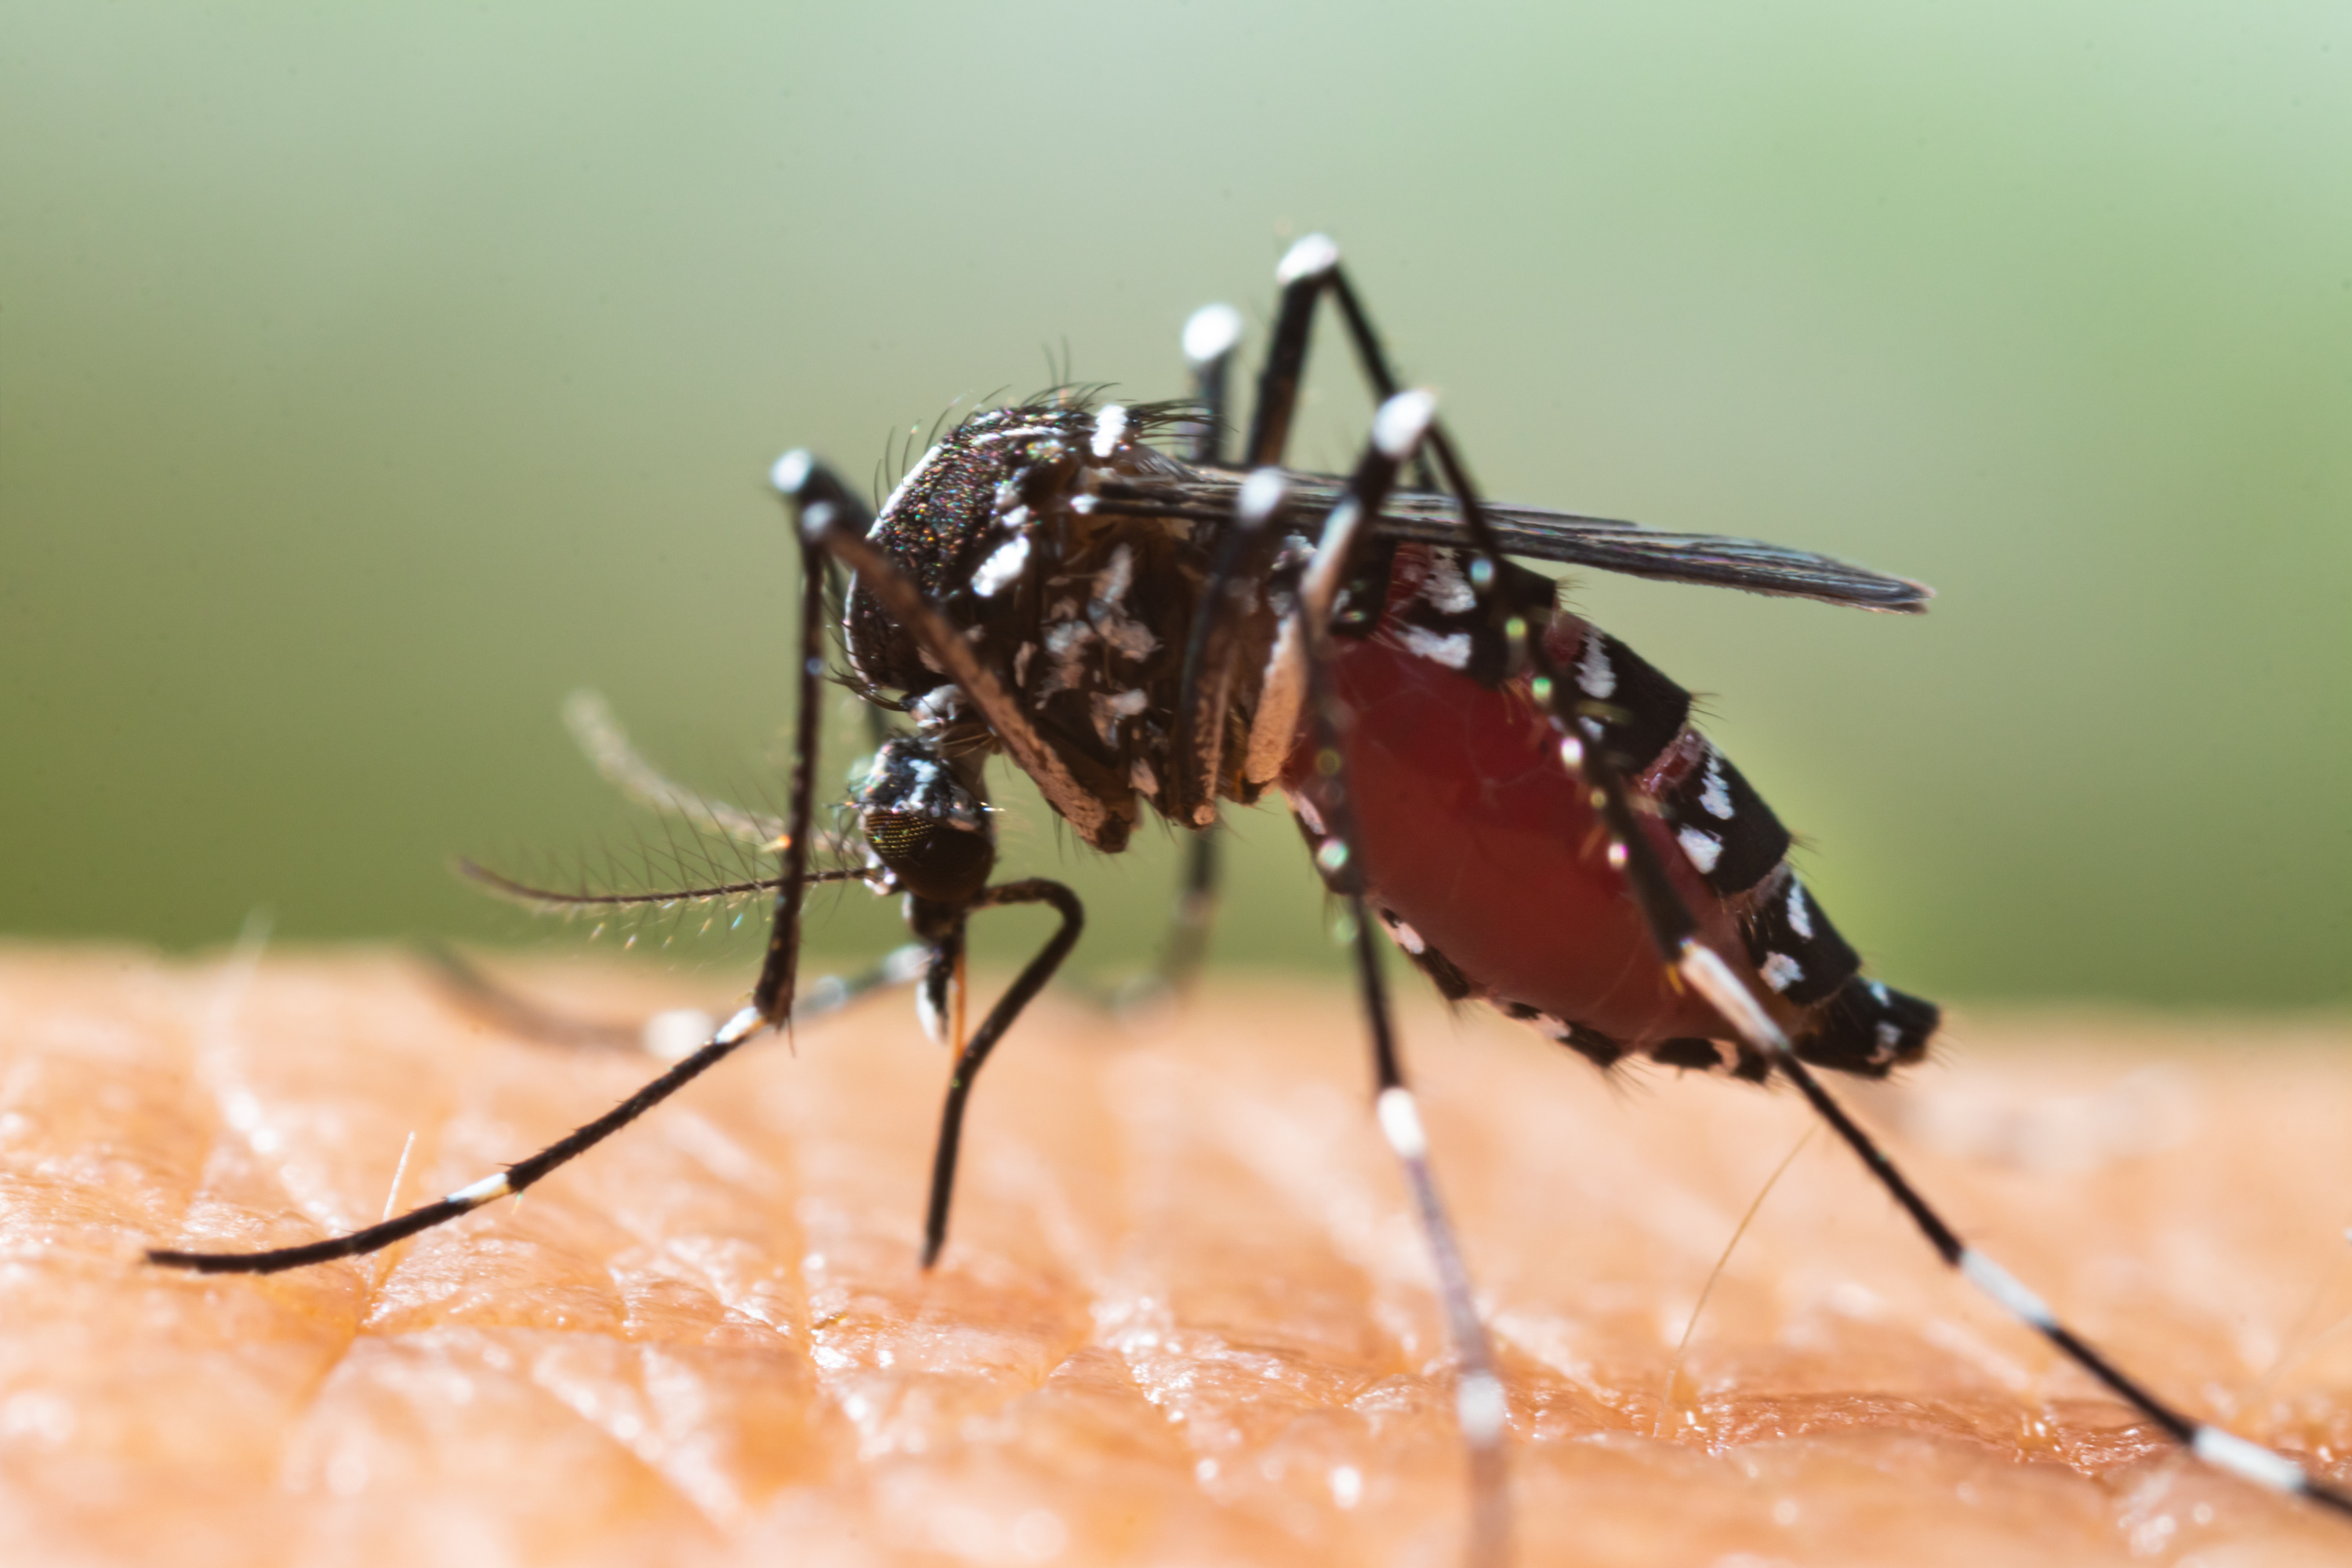 Autour de Lyon : opération anti-moustiques tigres après deux cas de dengue